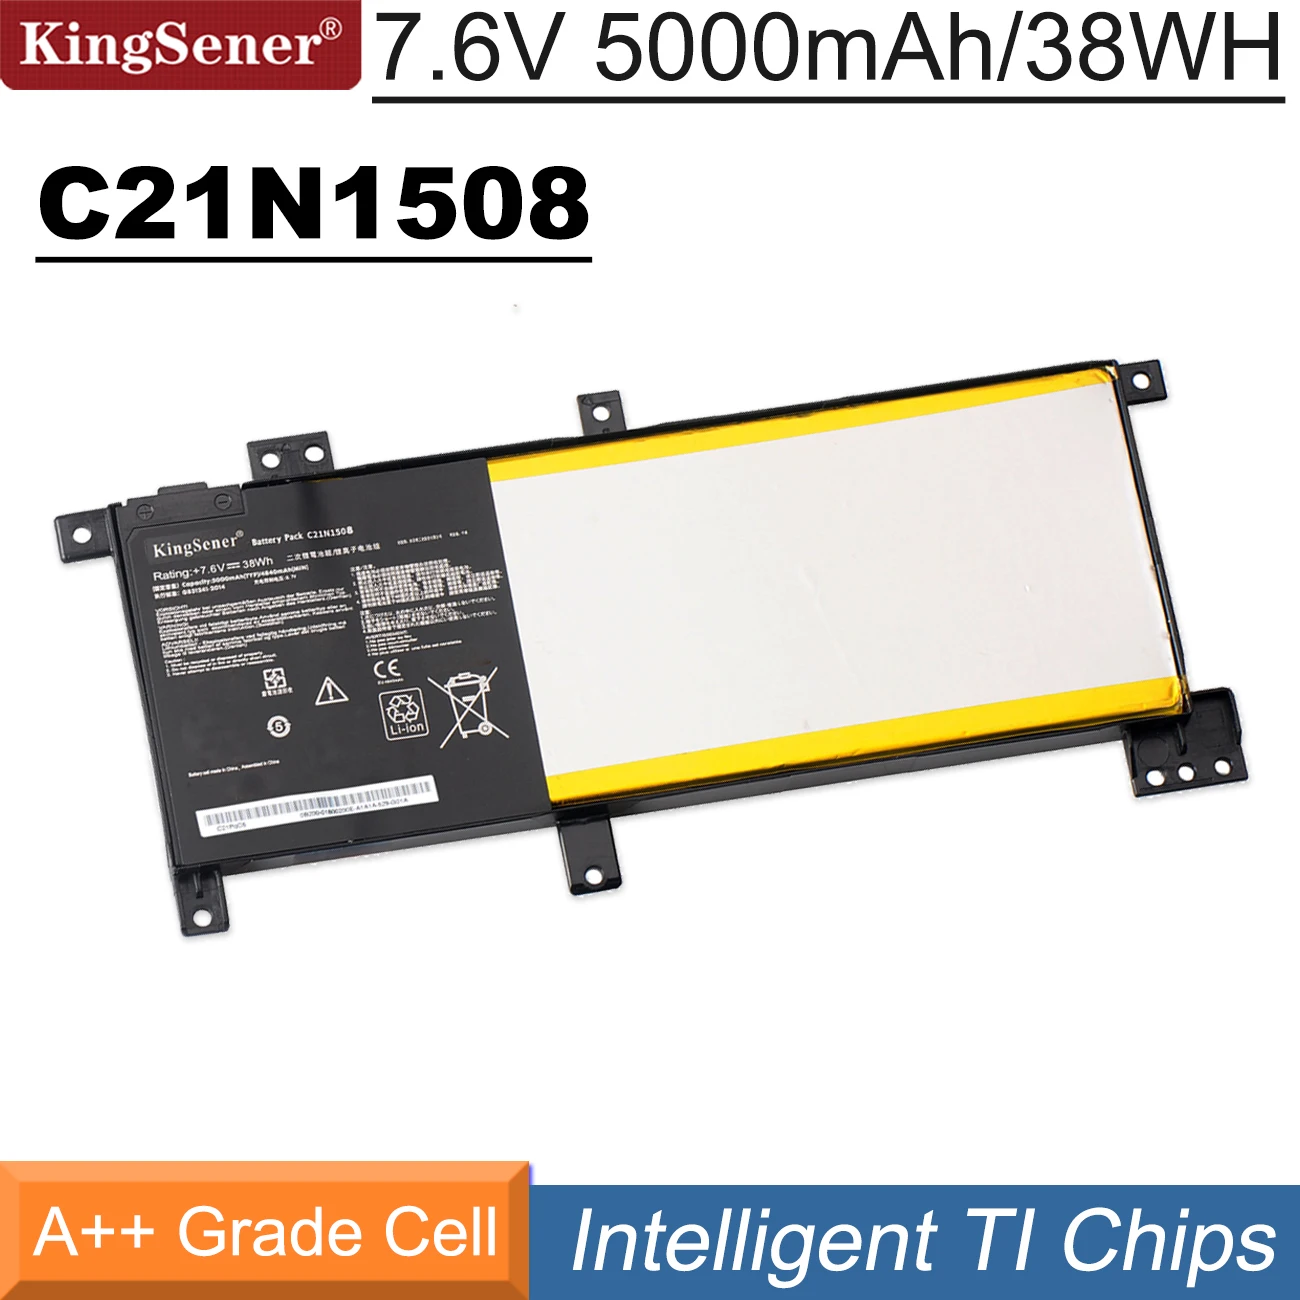 

KingSener C21N1508 Laptop Battery For ASUS X456U X456UA X456UB X456UF X456UJ X456UR X456UV A456U F456U F456UV K456U R457U 38WH